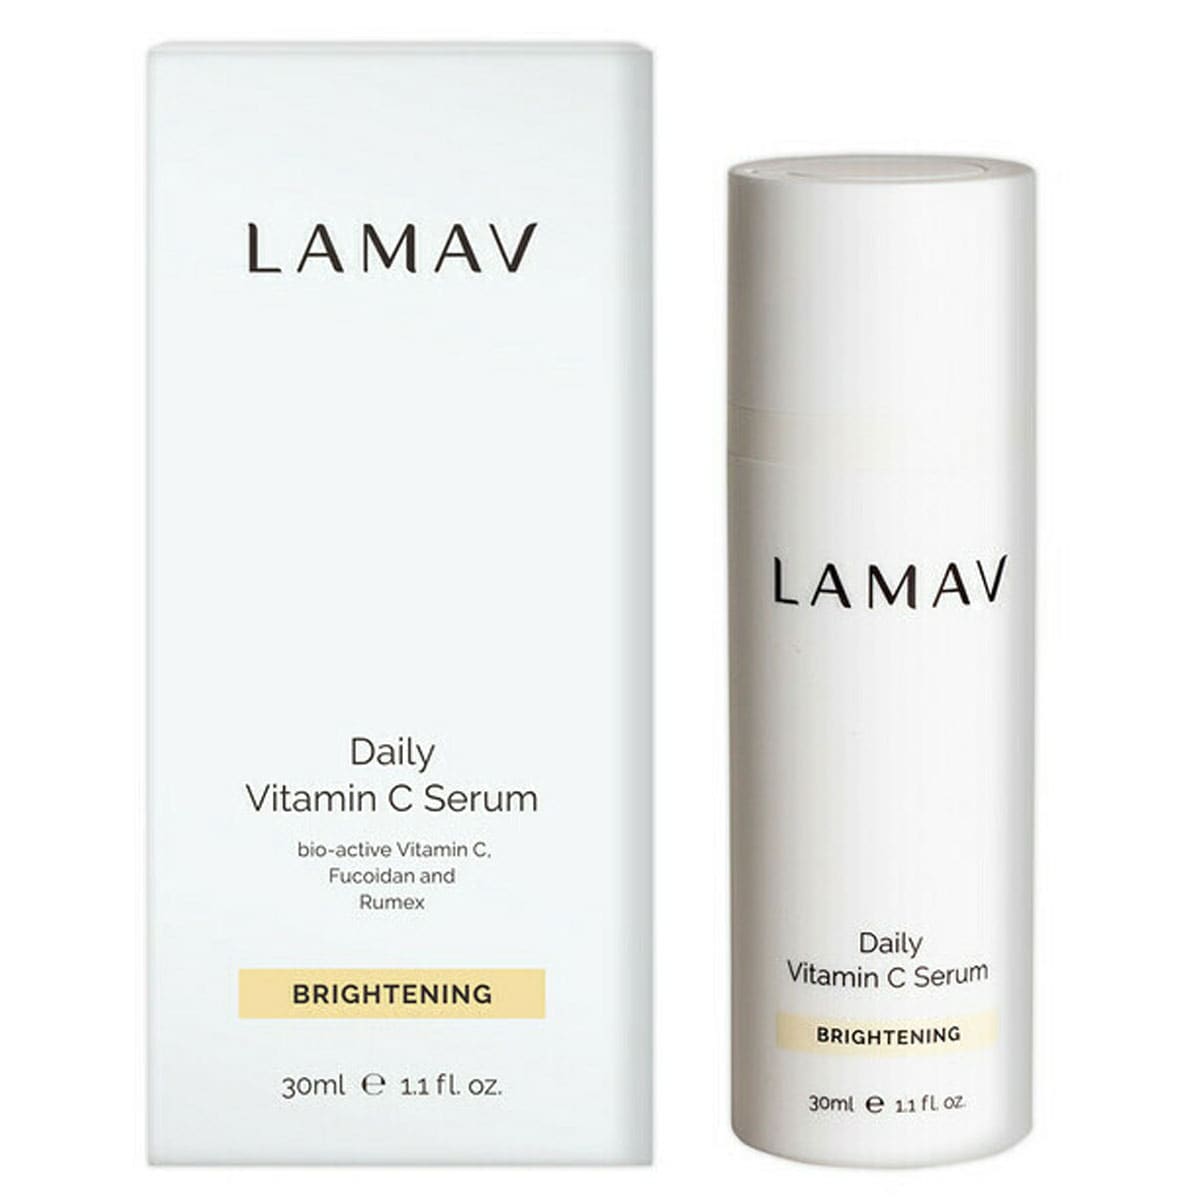 LAMAV Daily Vitamin C Serum 30ml